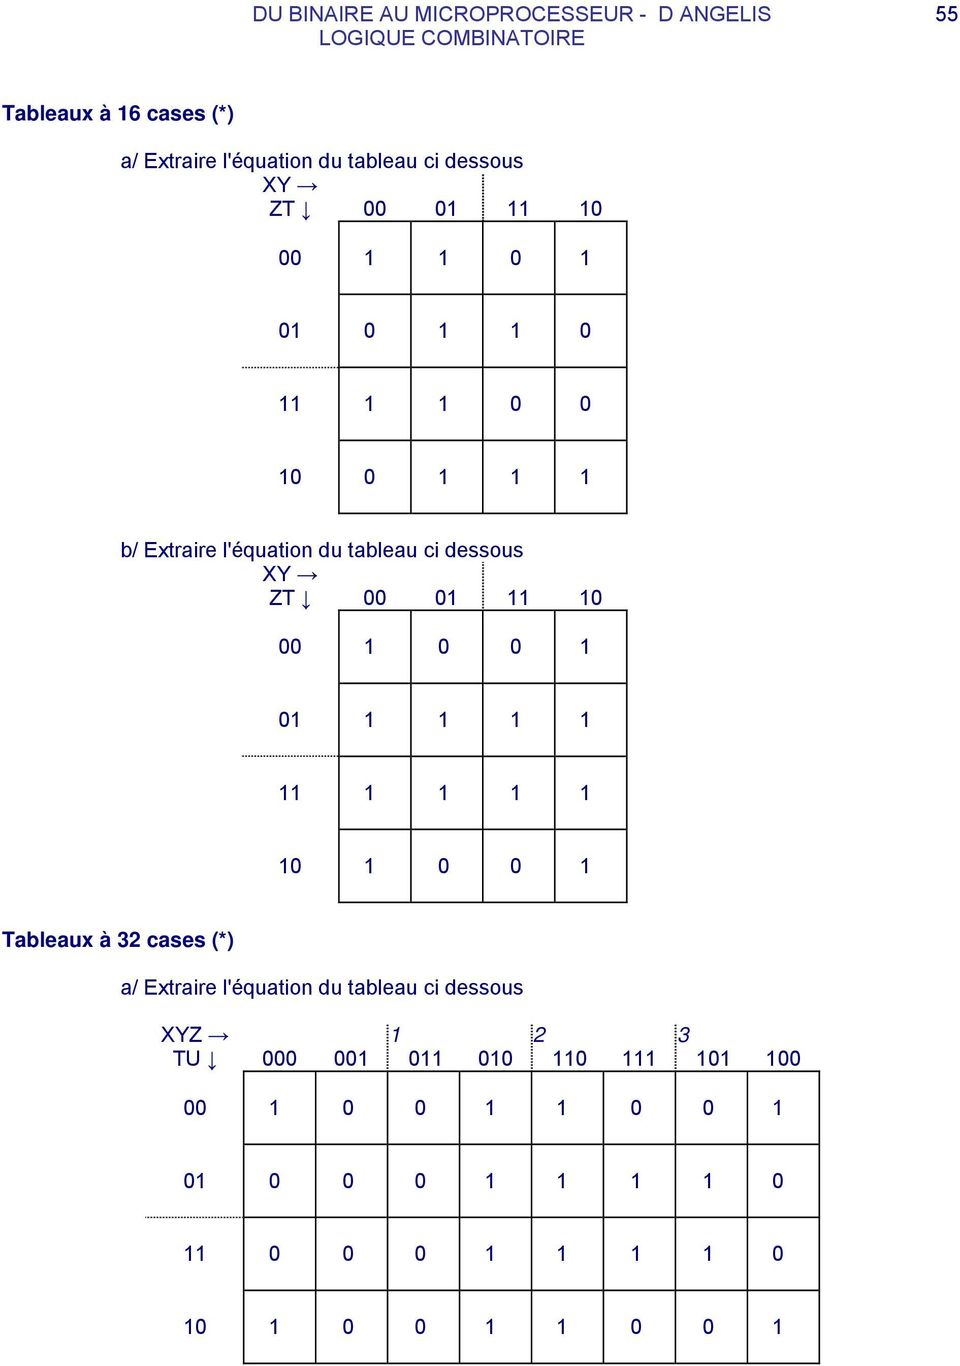 Extraire l'équation du tableau ci dessous ZT Tableaux à 32